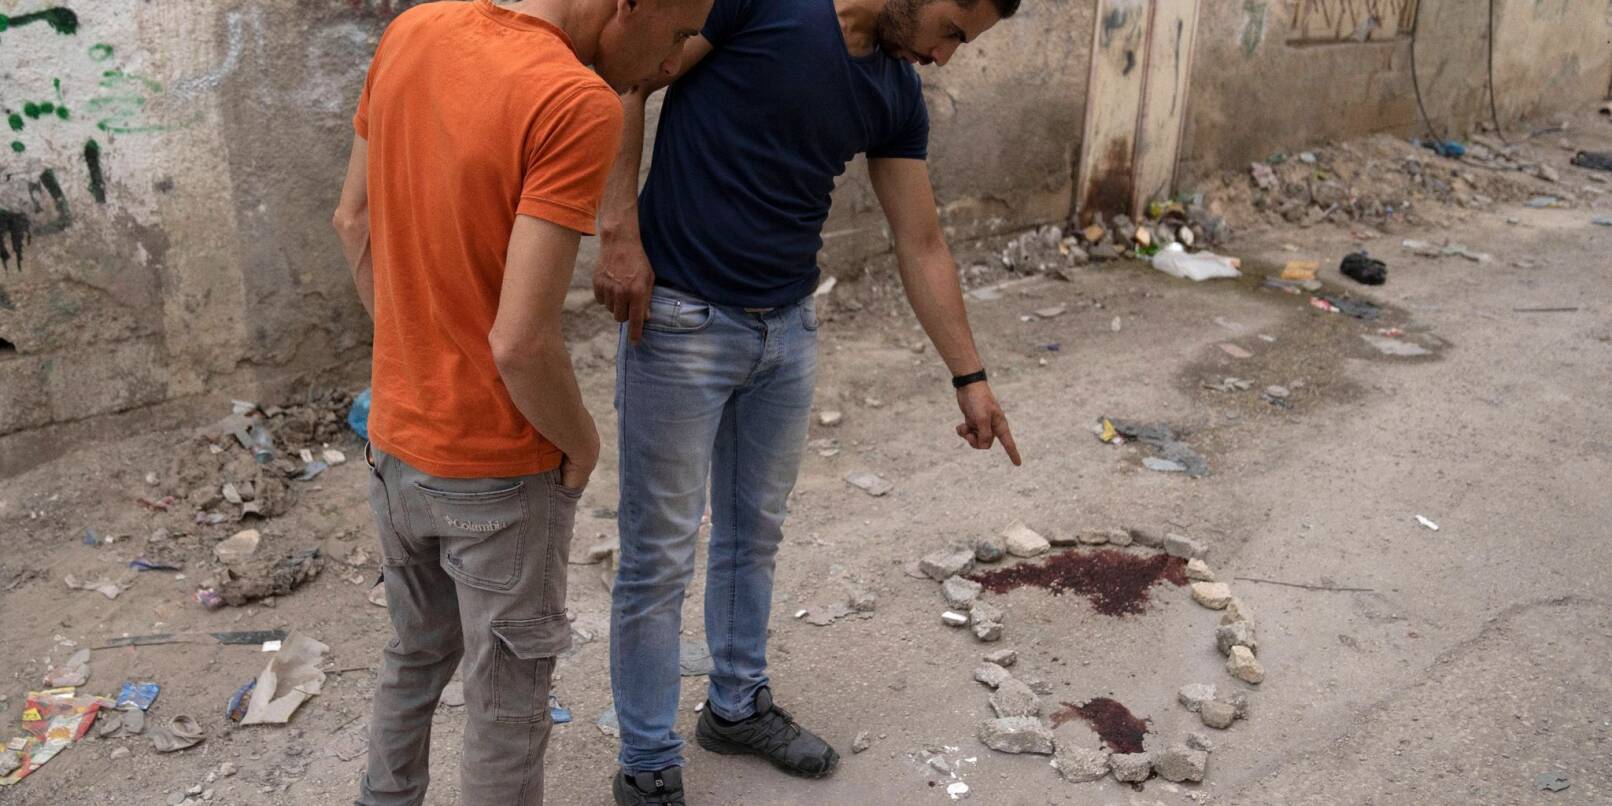 Palästinenser zeigen auf einen Blutfleck auf dem Boden.